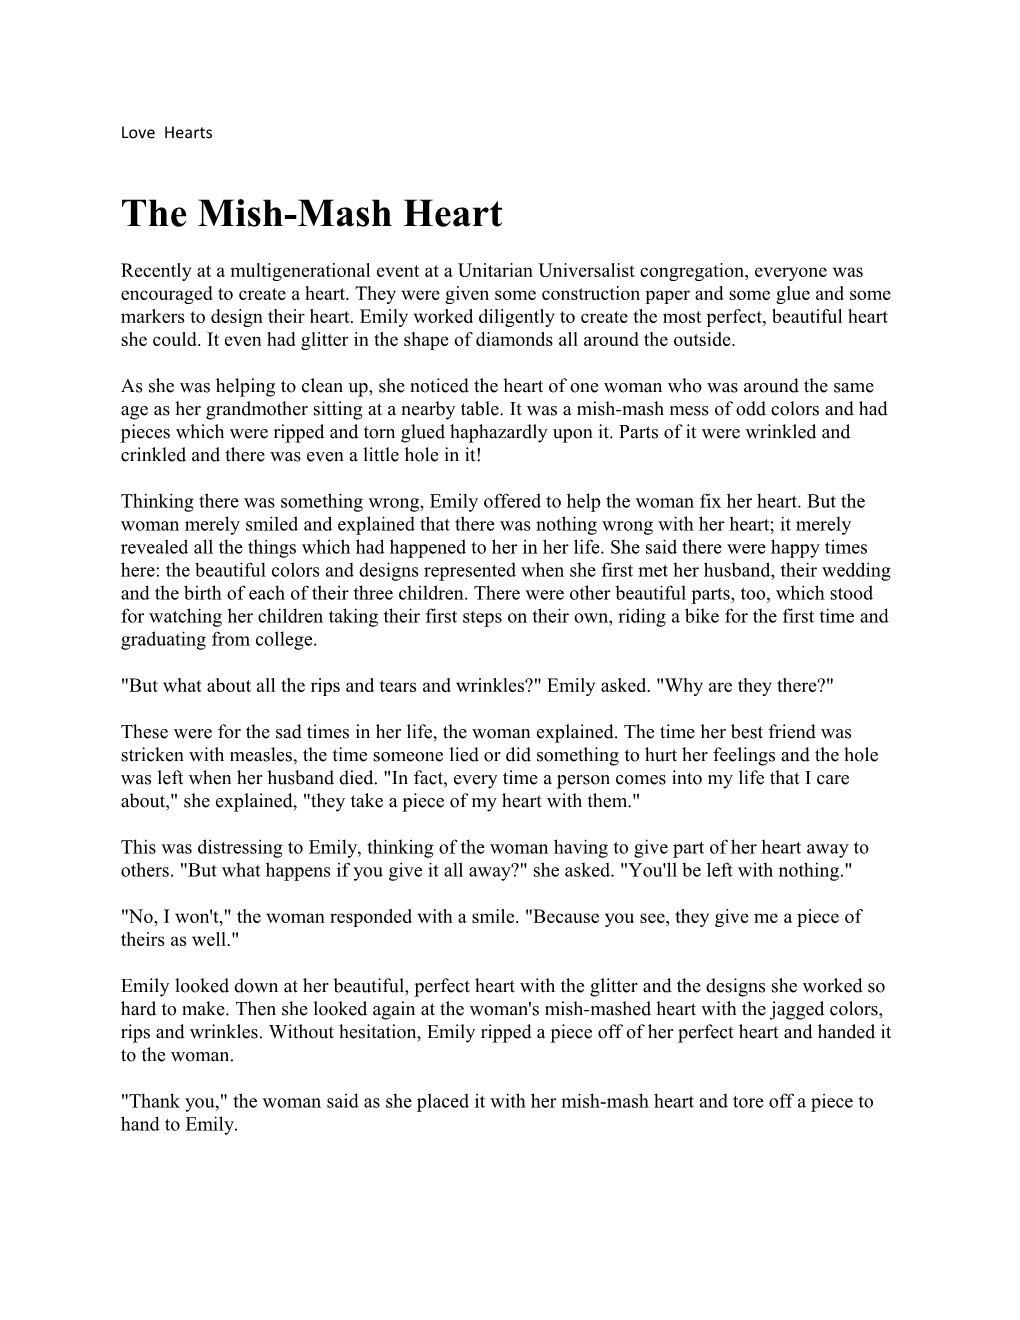 The Mish-Mash Heart